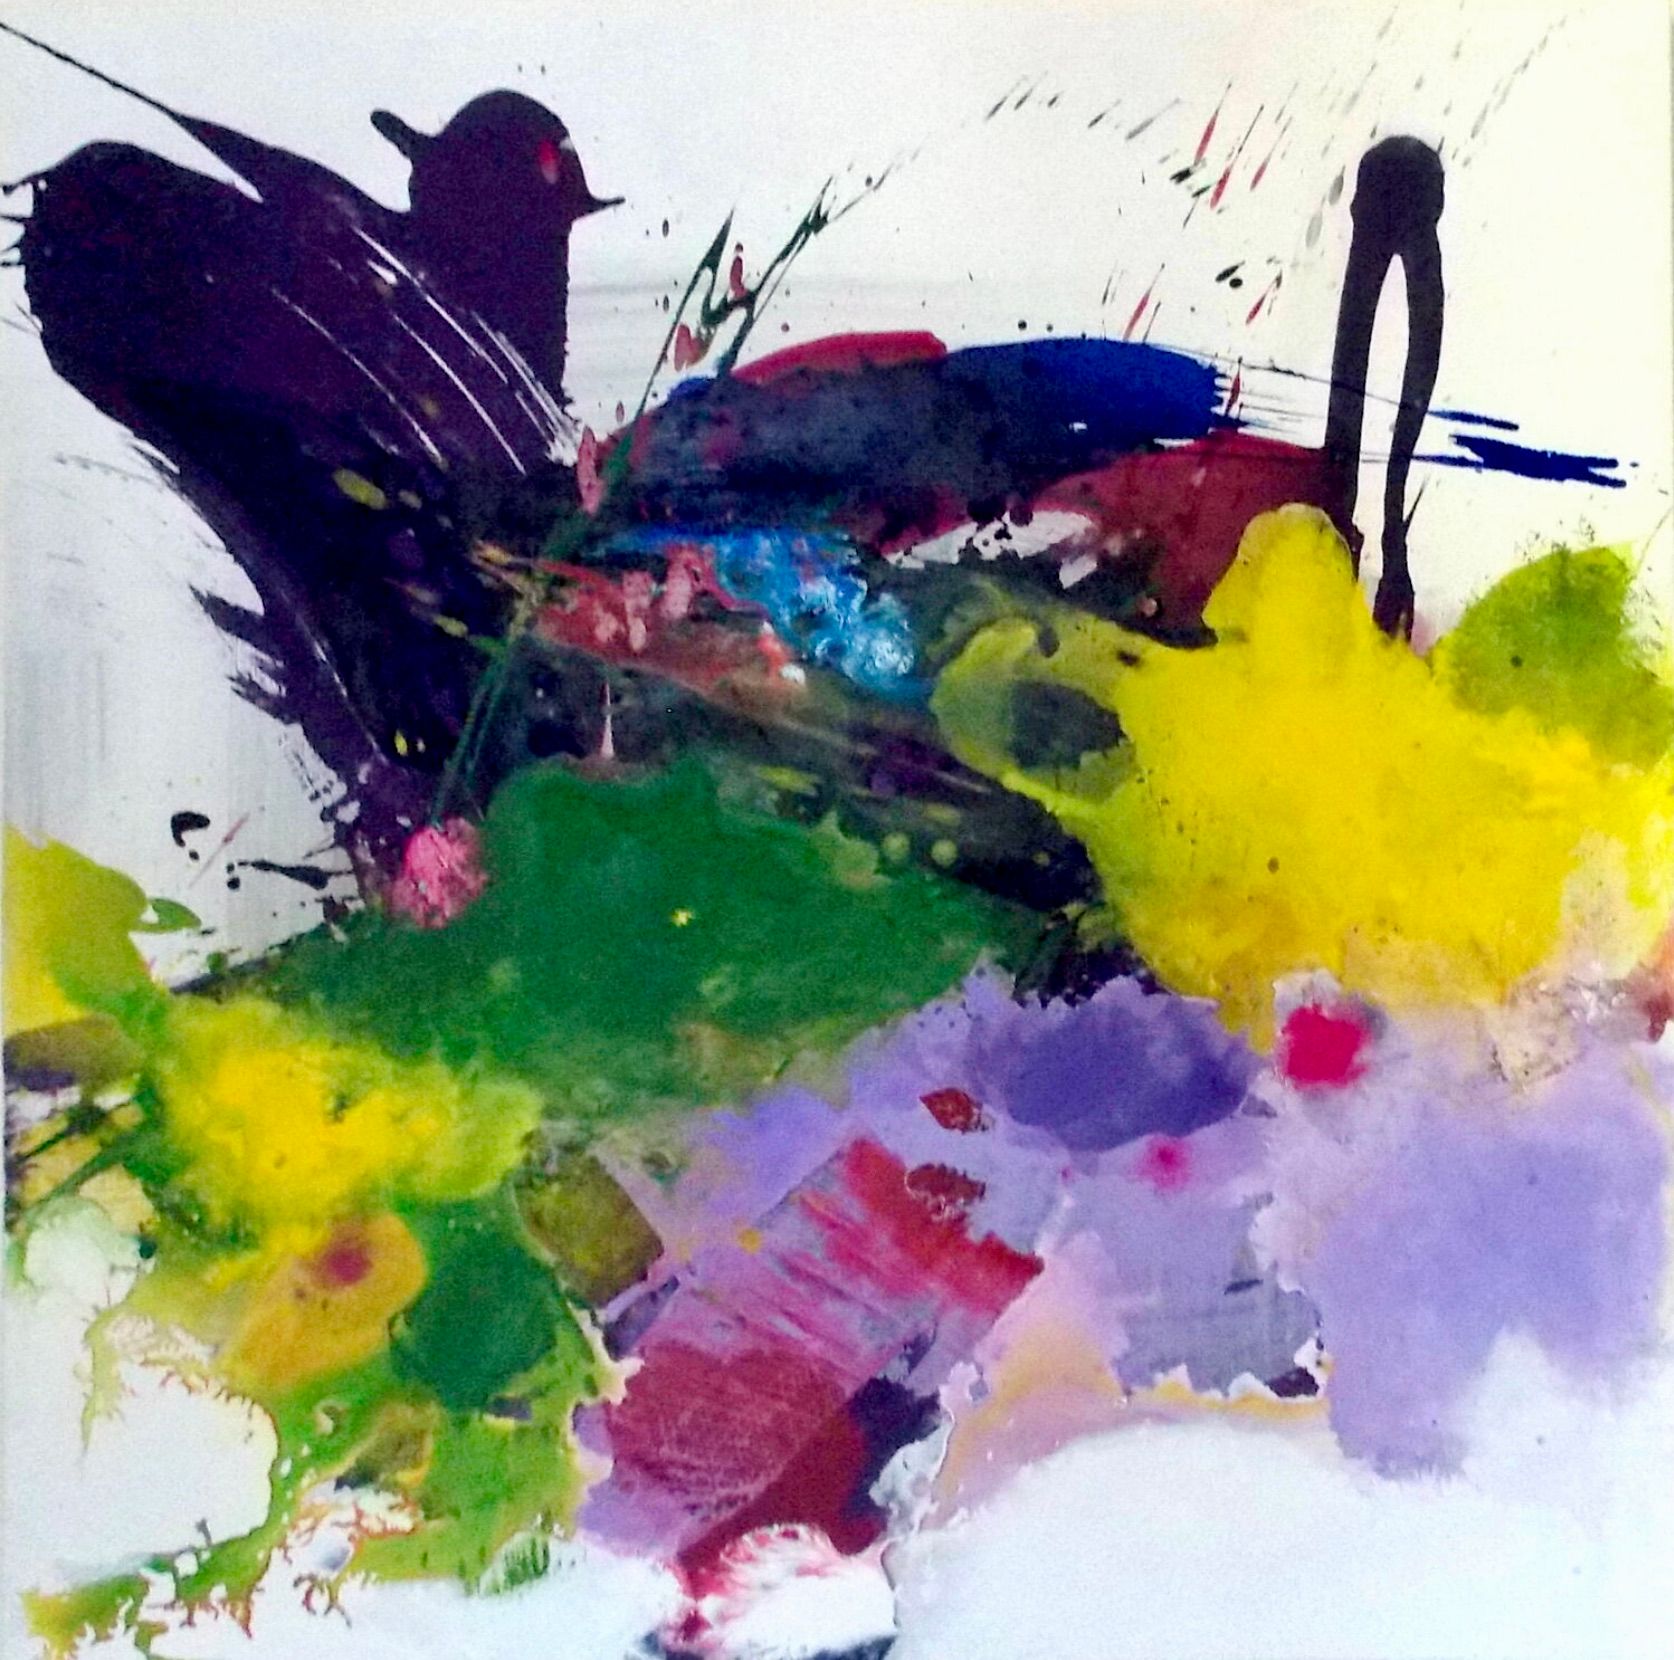 Dans la peinture "Farbenrausch" de Christa Haack, expressionniste, abstraite et colorée, les couleurs dominent.